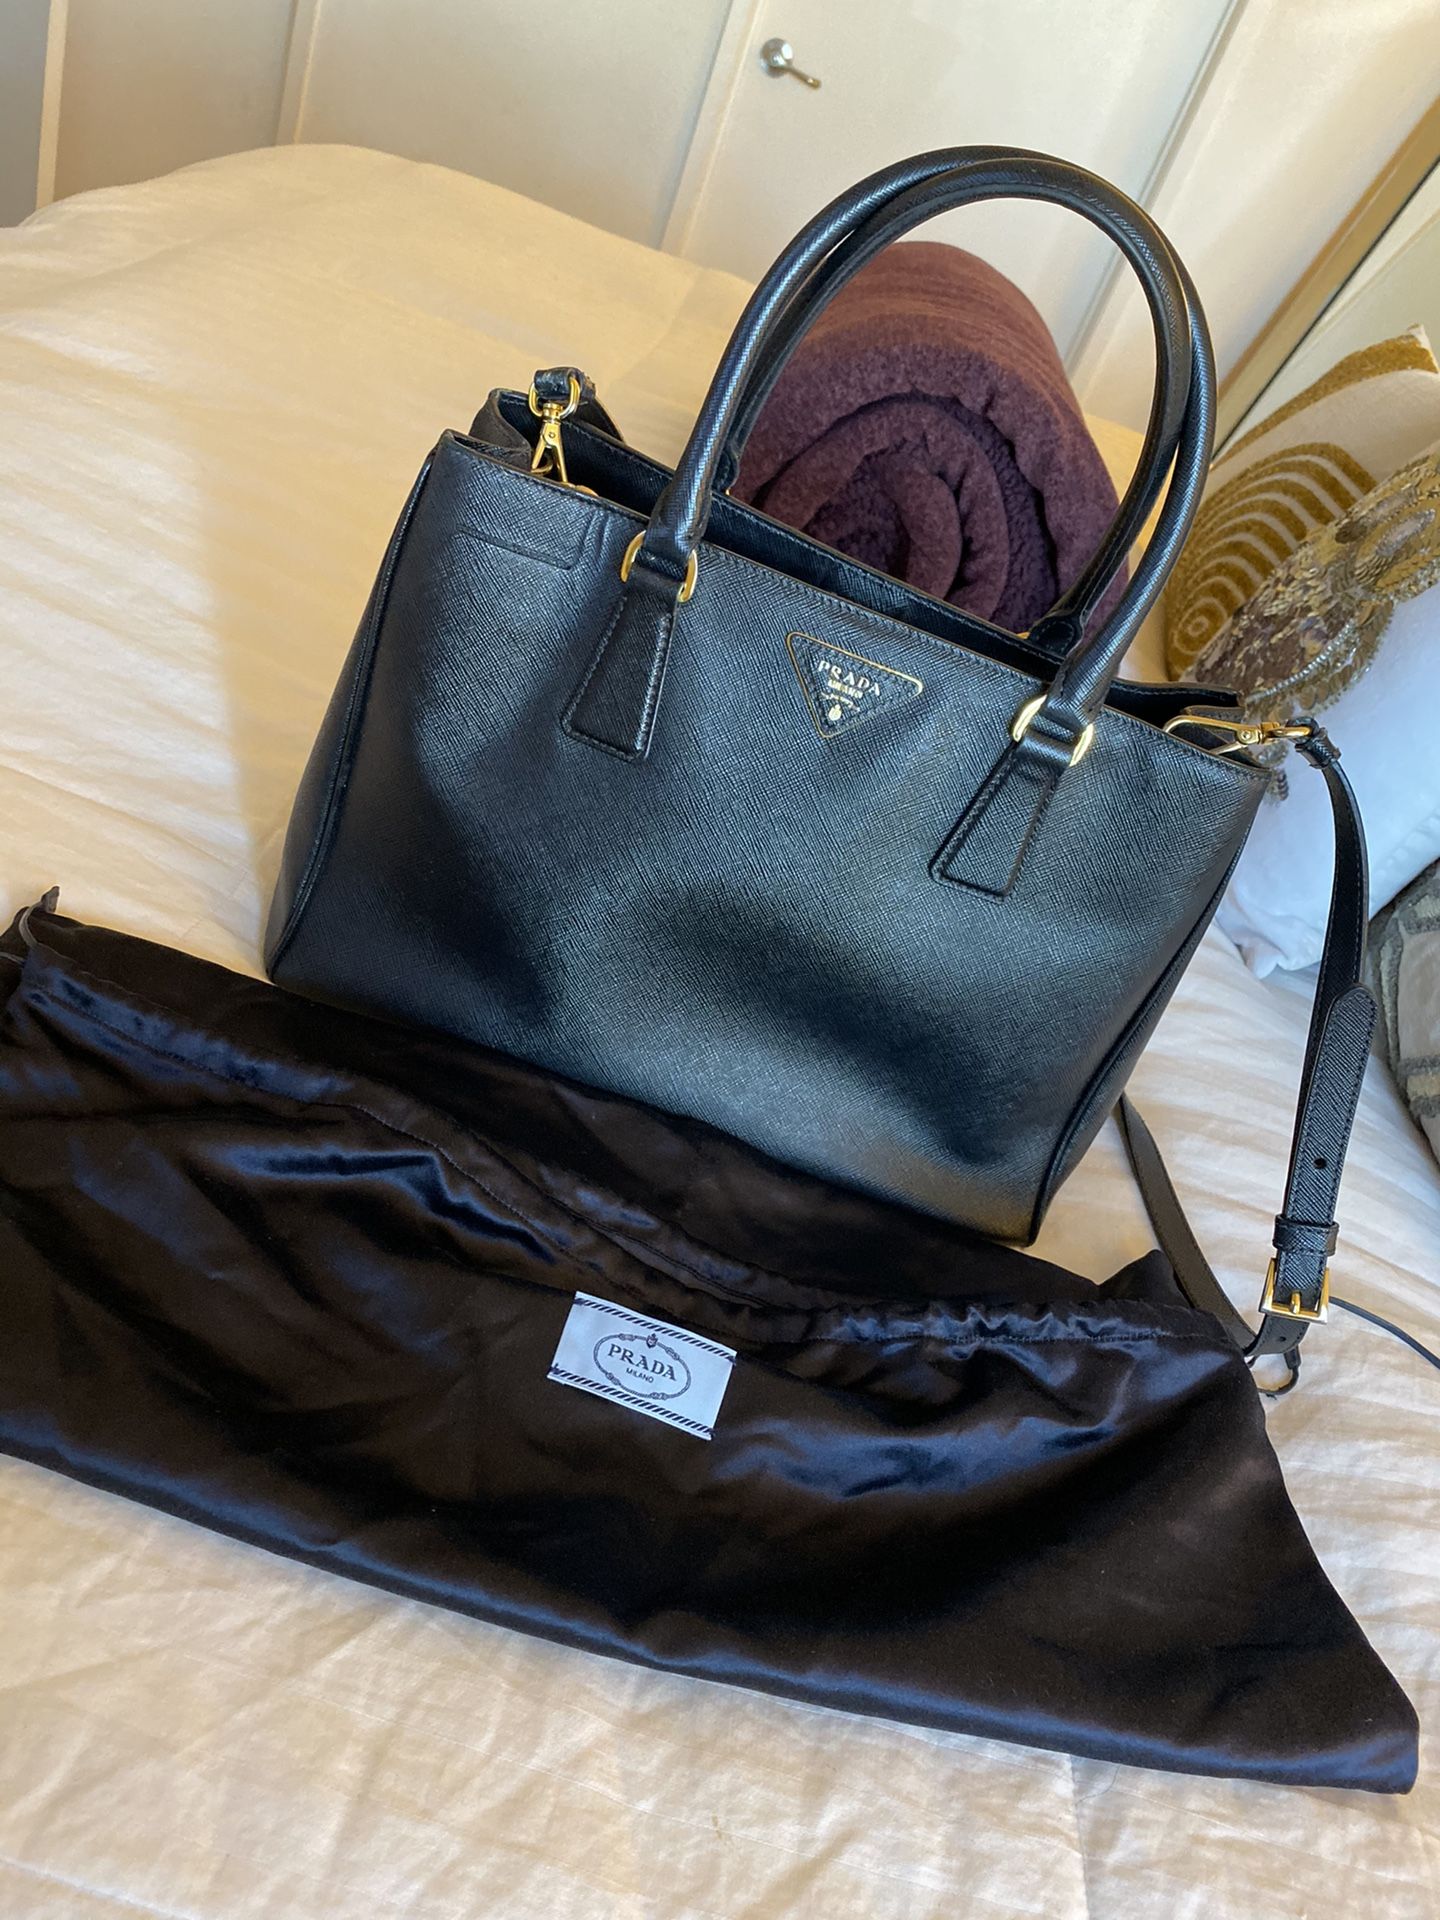 Prada Galleria medium Saffiano leather bag